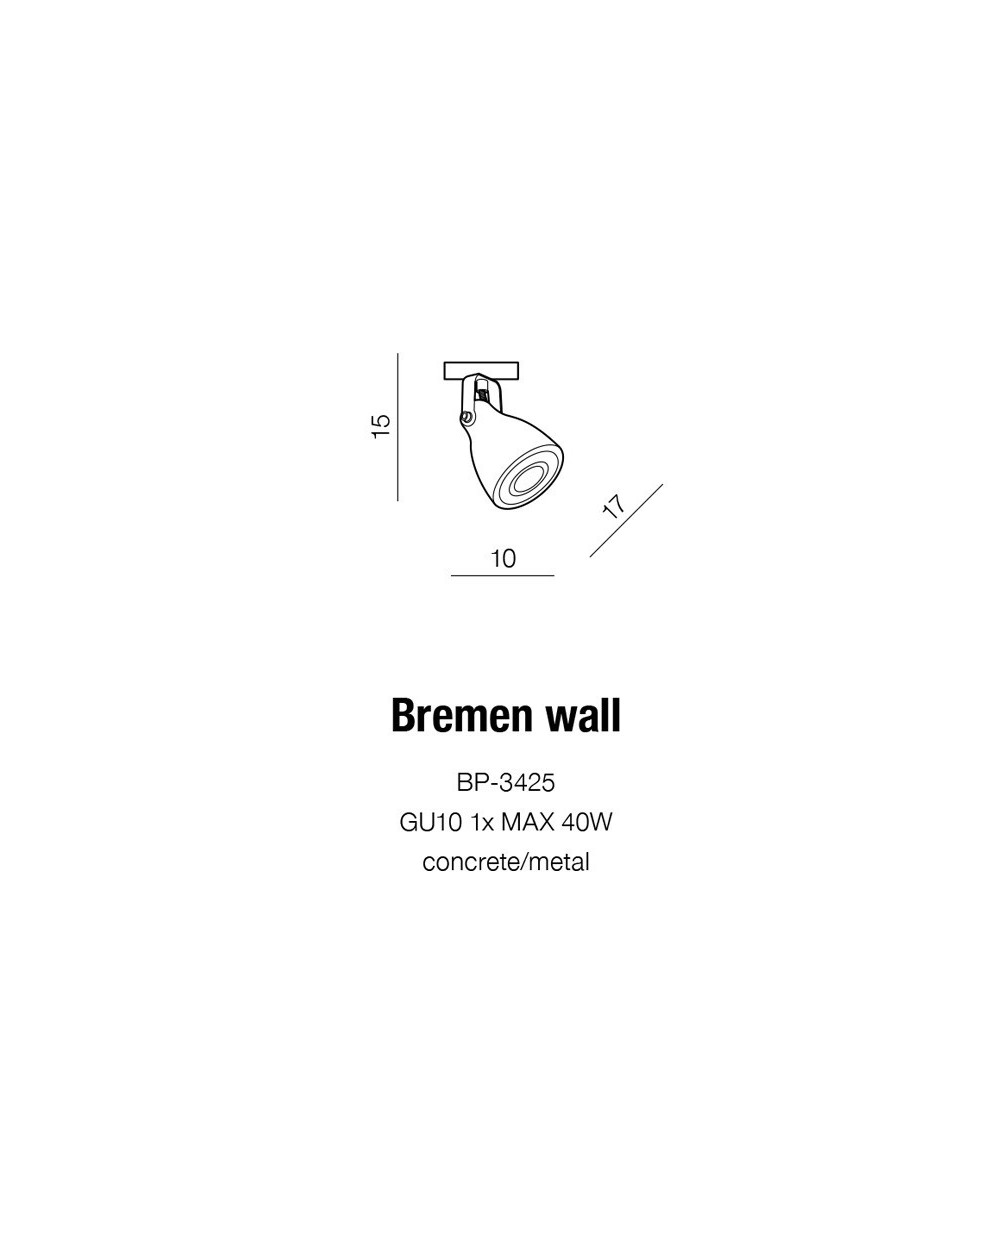 BREMEN WALL